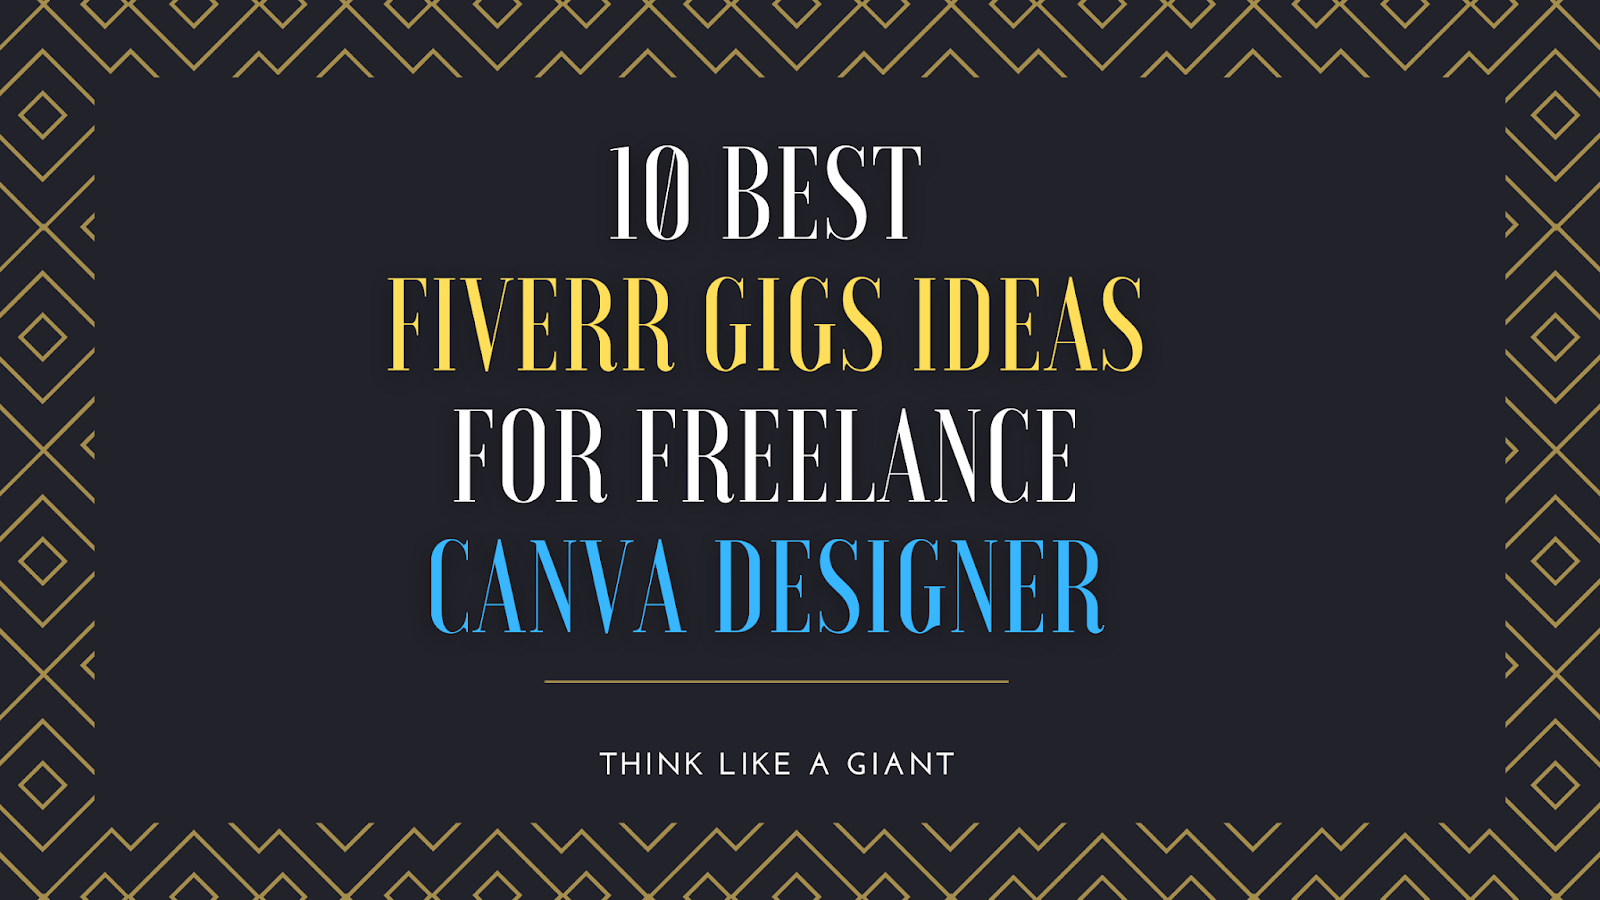 10 Best Fiverr gigs Ideas for freelance Canva designer